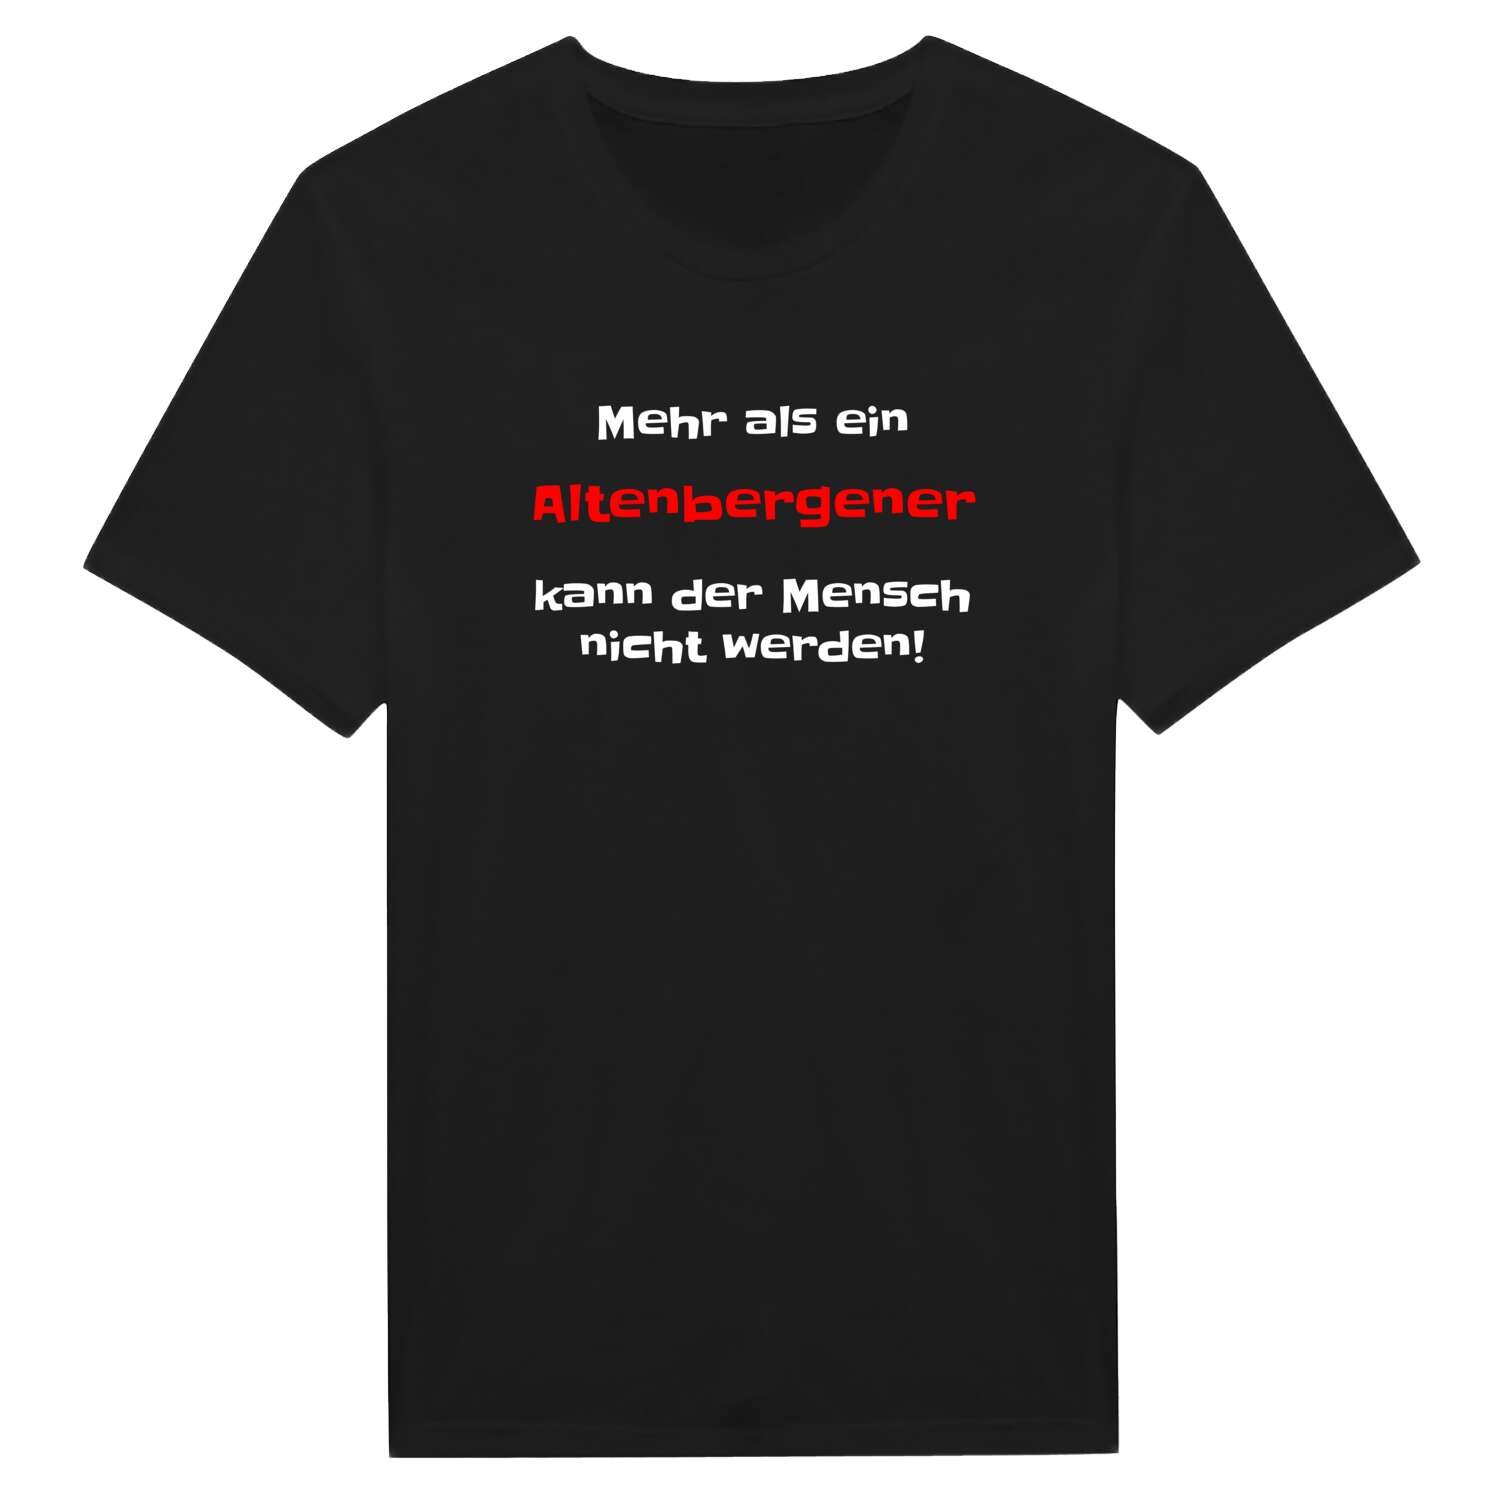 Altenbergen T-Shirt »Mehr als ein«